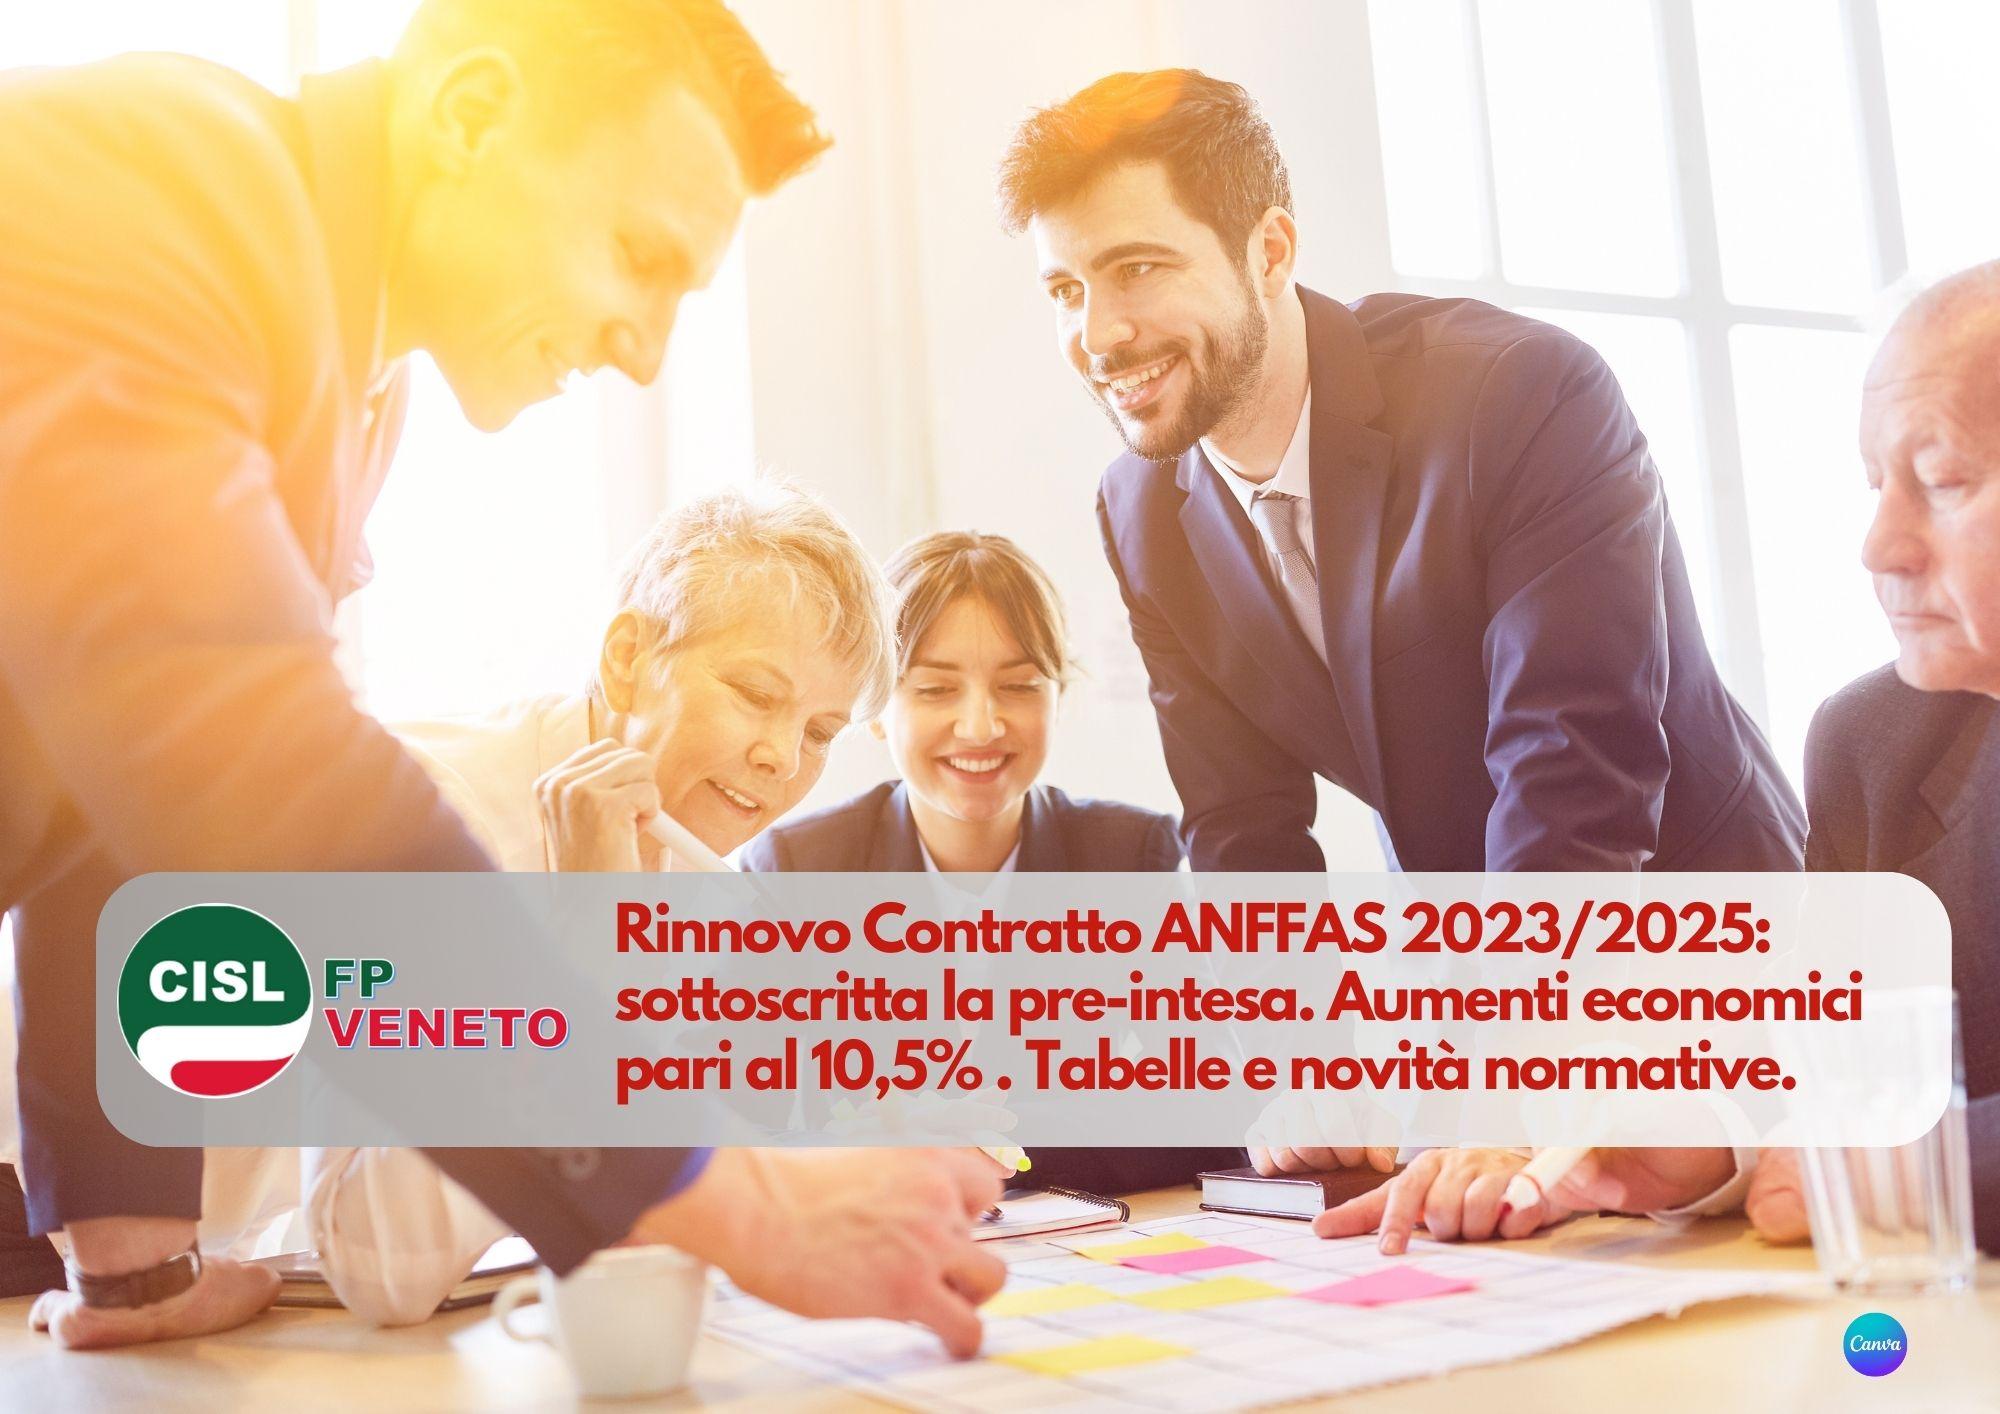 CISL FP Veneto. Rinnovo Contratto ANFFAS 2023/2025: sottoscritta la pre-intesa. I dettagli